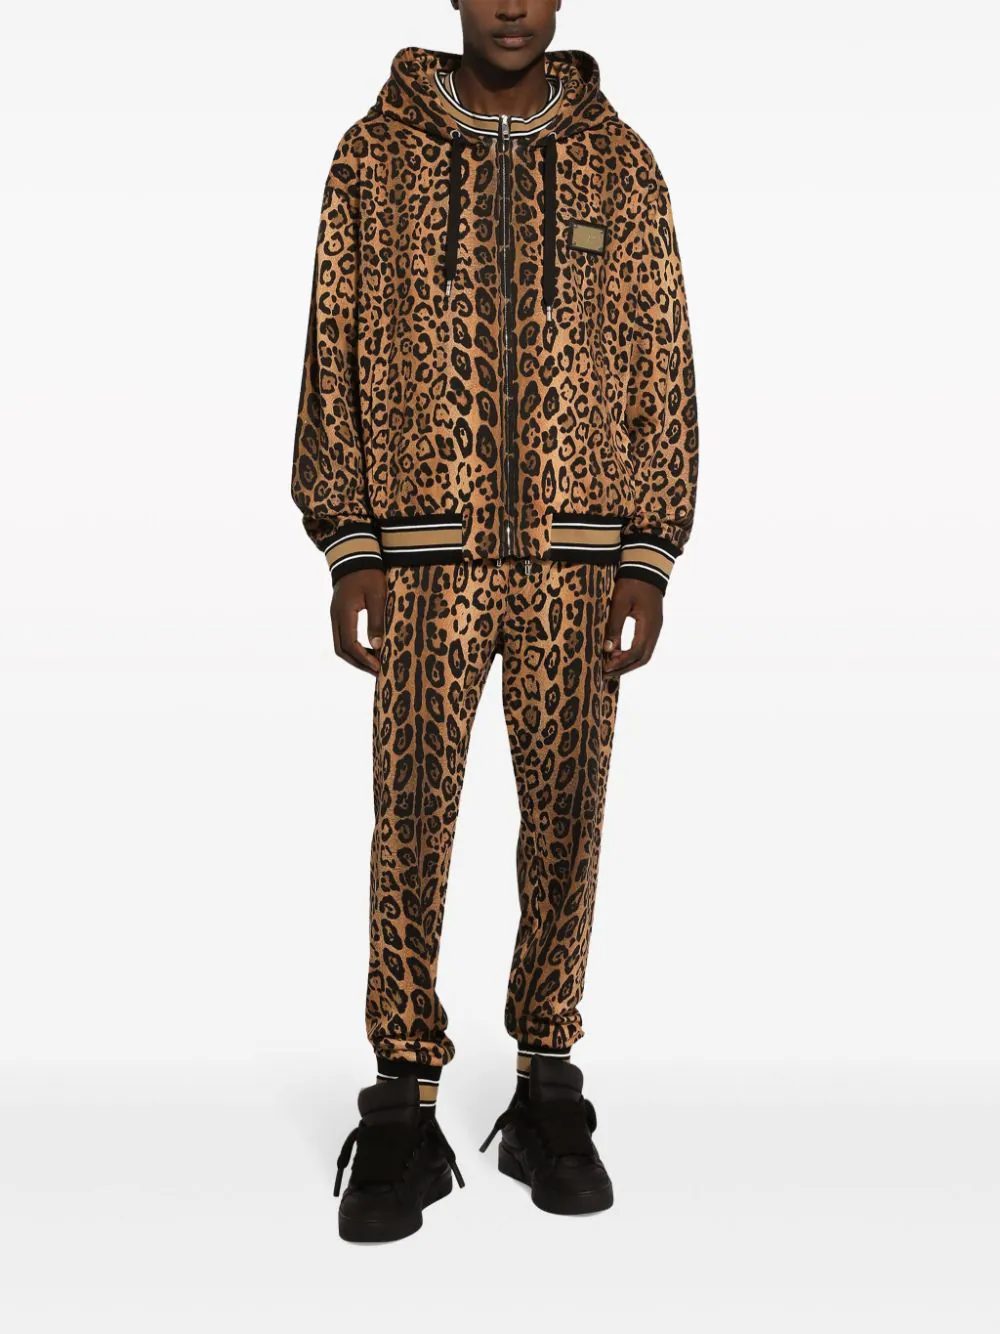 Находки недели: леопардовый костюм Dolce&Gabbana, полупрозрачный вязаный джемпер и очки в стиле «привет из будущего»